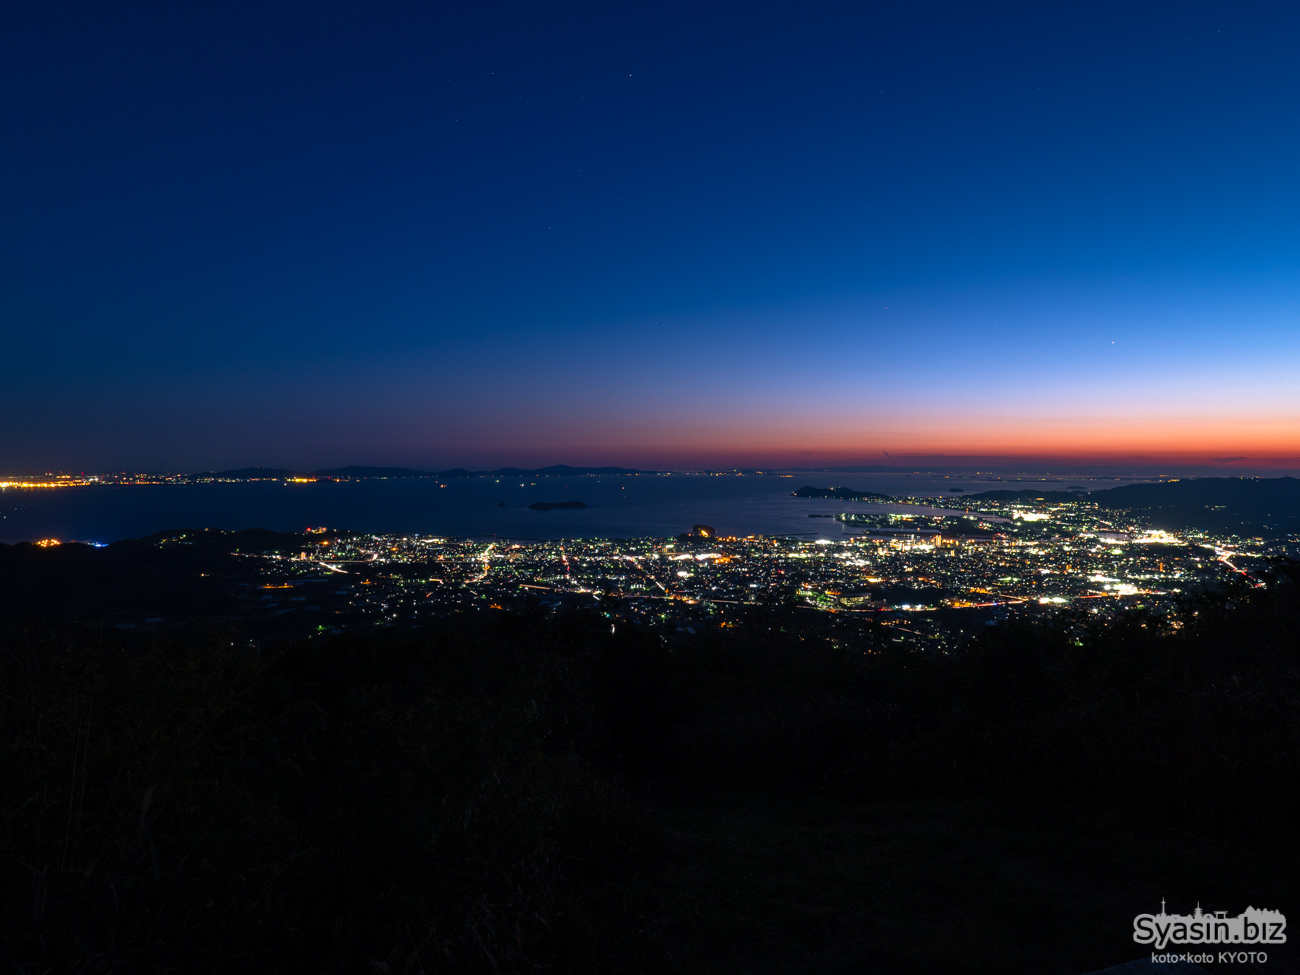 五井山の夜景 – 蒲郡と三河湾を一望できる大展望